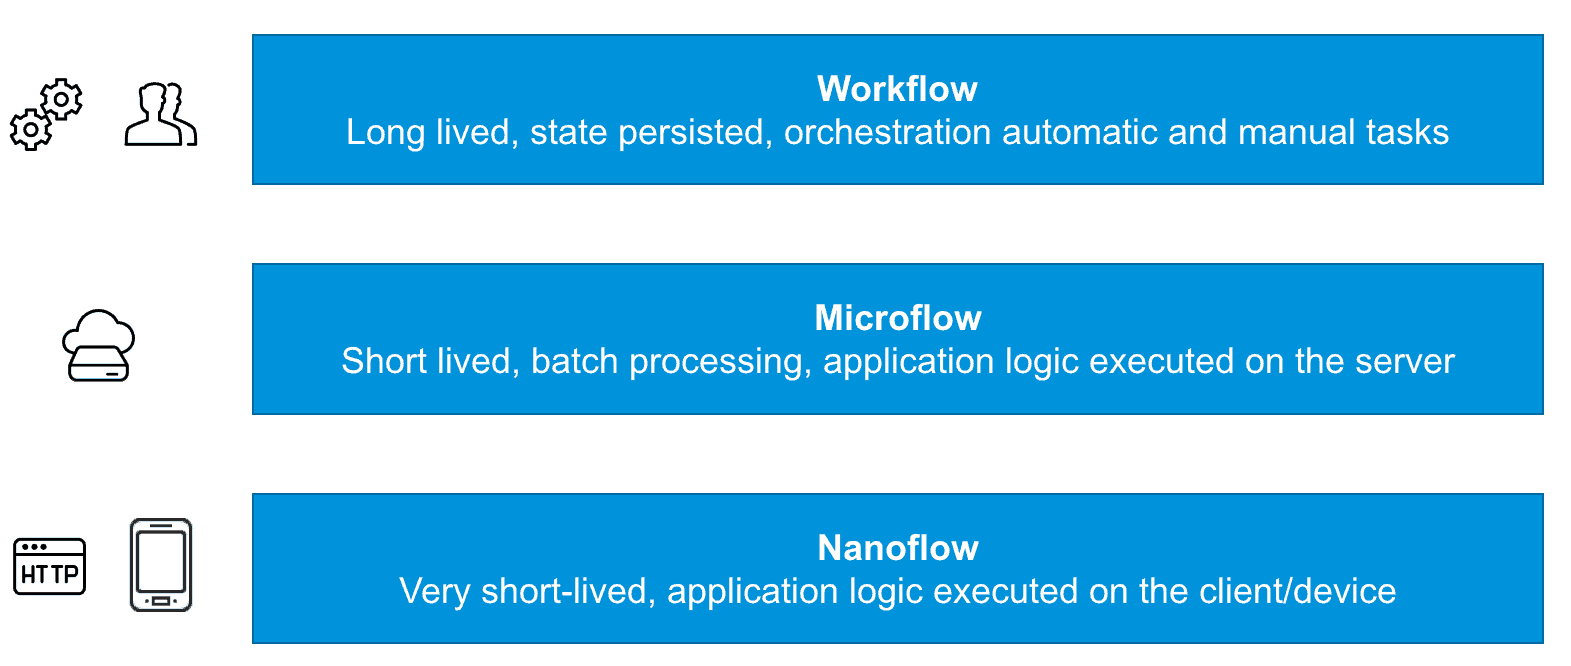 Nanoflows in Context: Workflow, Microflow, Nanoflow